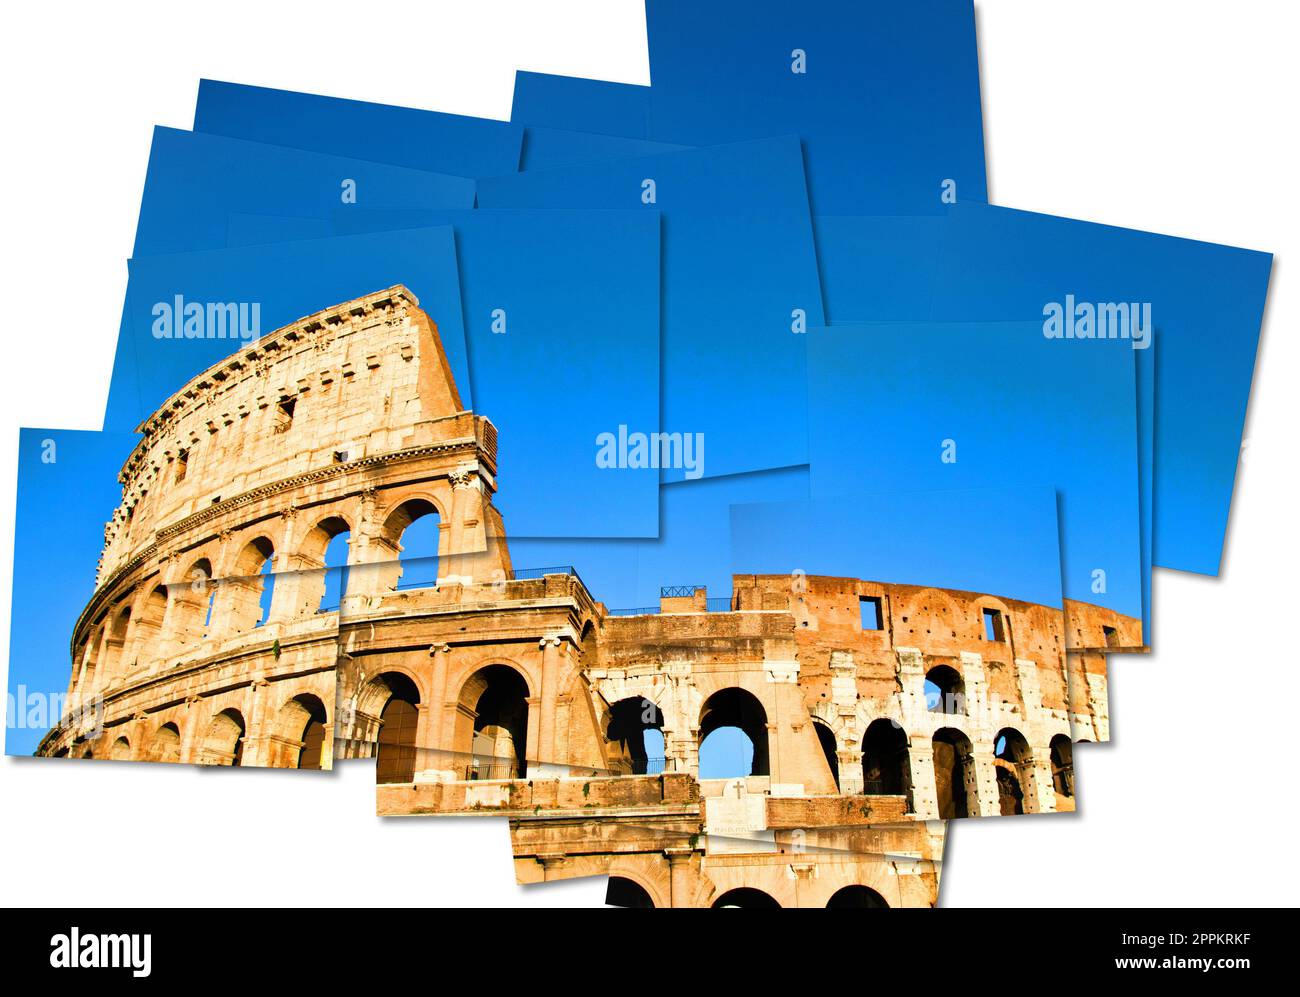 Italia, Roma - Colosseo Romano con cielo blu, il più famoso monumento italiano. Foto Stock